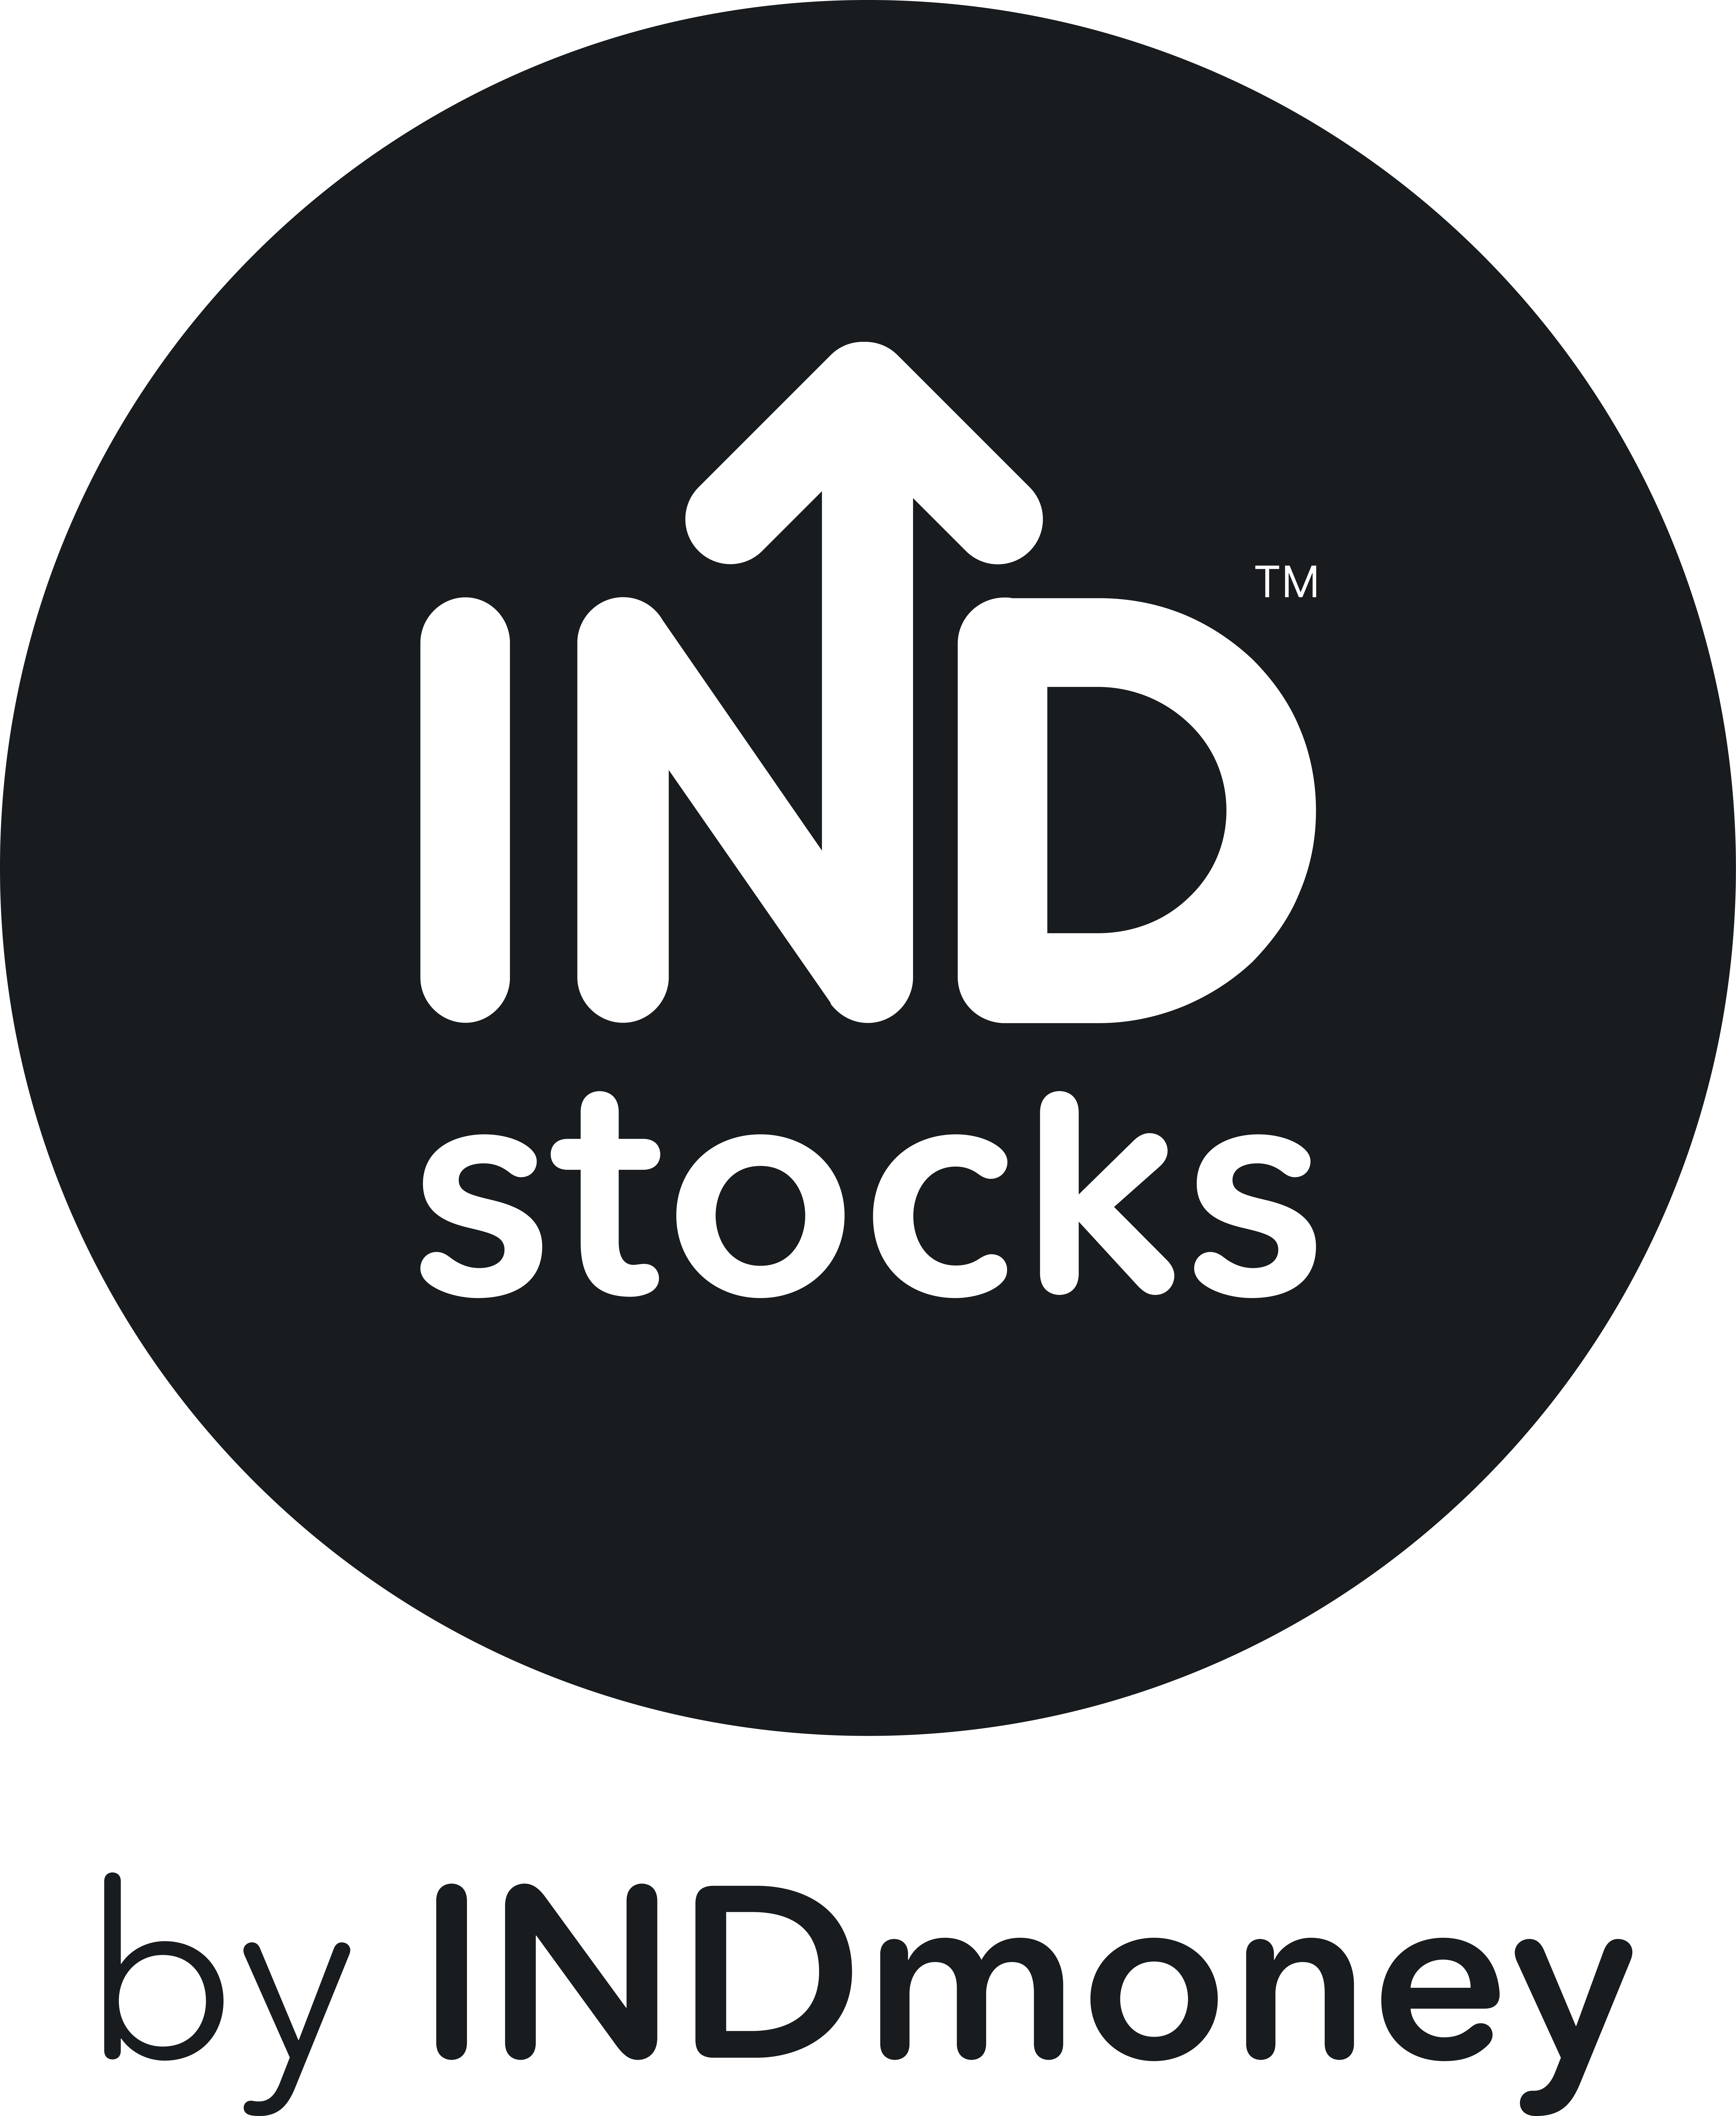 IND Money logo